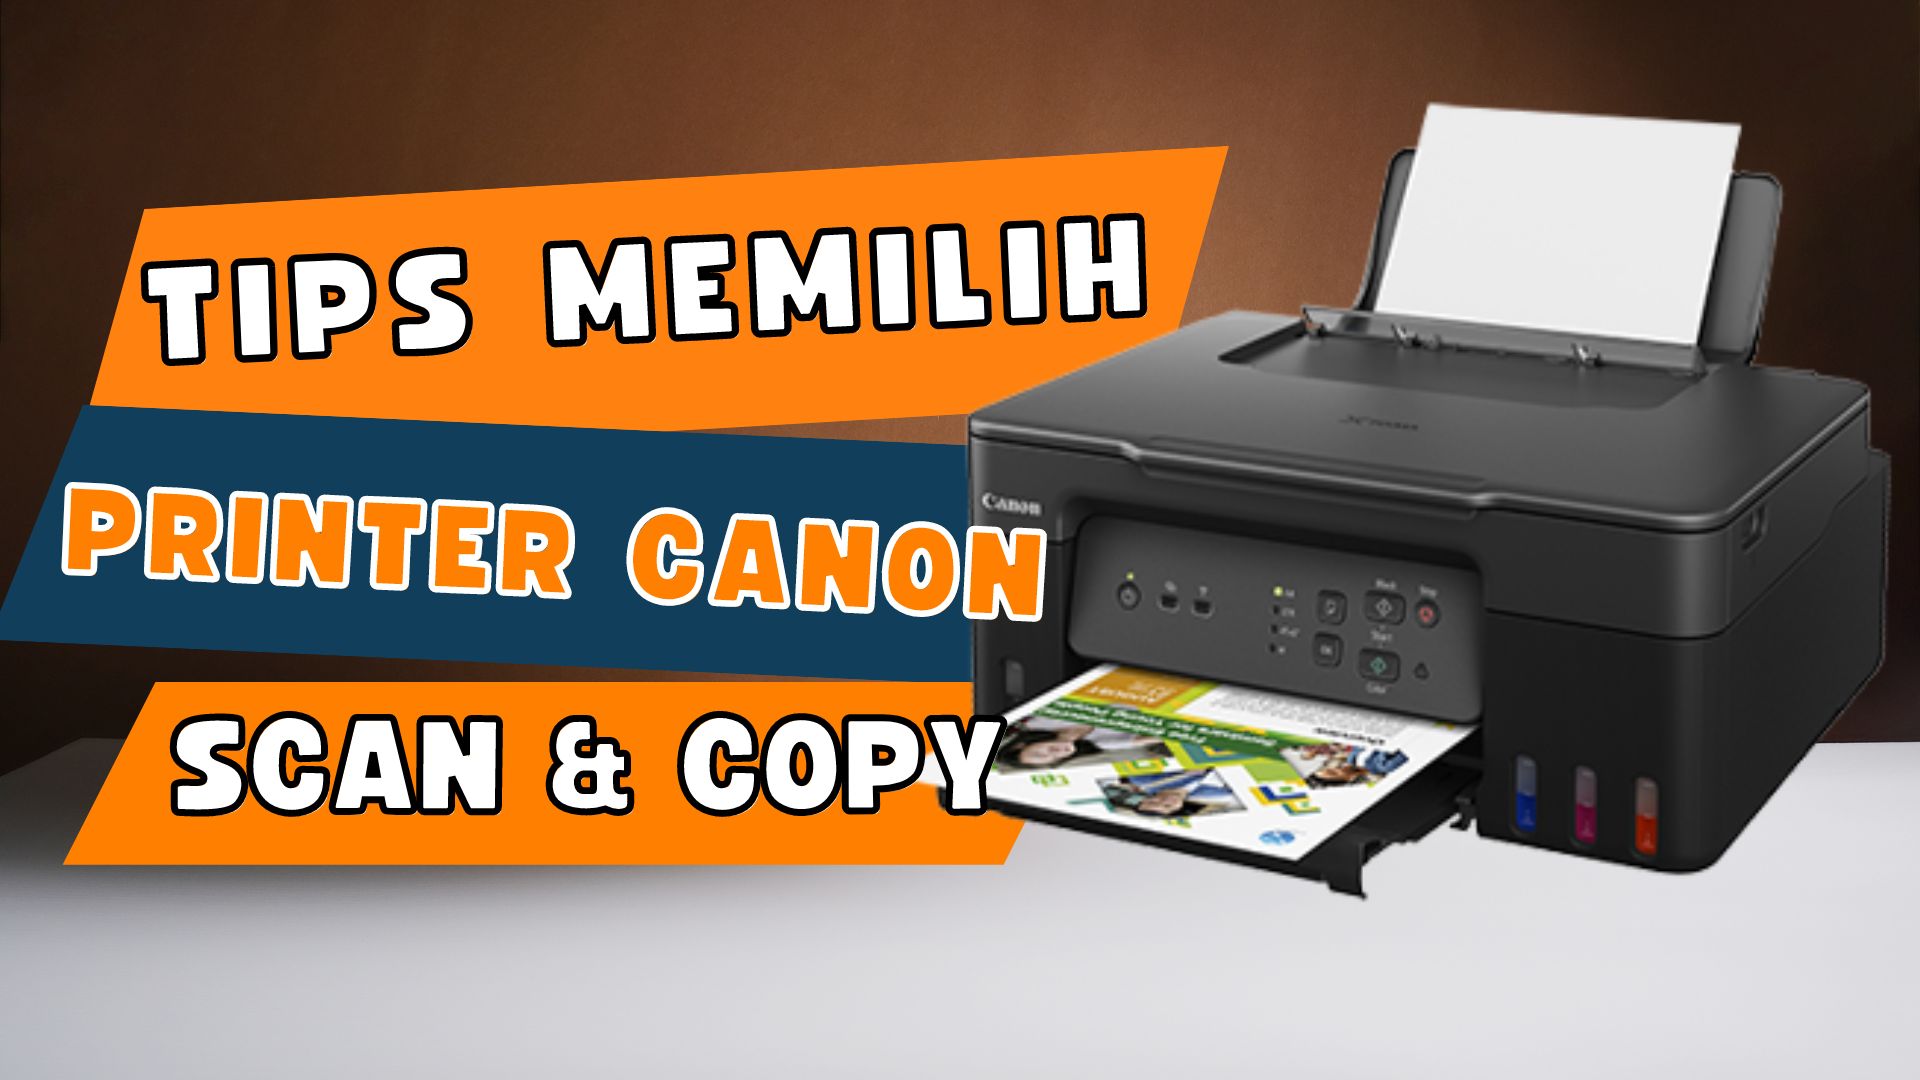 Dalam artikel ini, Anda akan menemukan panduan lengkap untuk memilih printer Canon dengan kemampuan scan dan copy yang cocok untuk pelajar, mahasiswa, atau keperluan kantor Anda. Temukan tips berguna untuk membuat keputusan yang tepat dalam memenuhi kebutuhan cetak, scan, dan copy Anda.